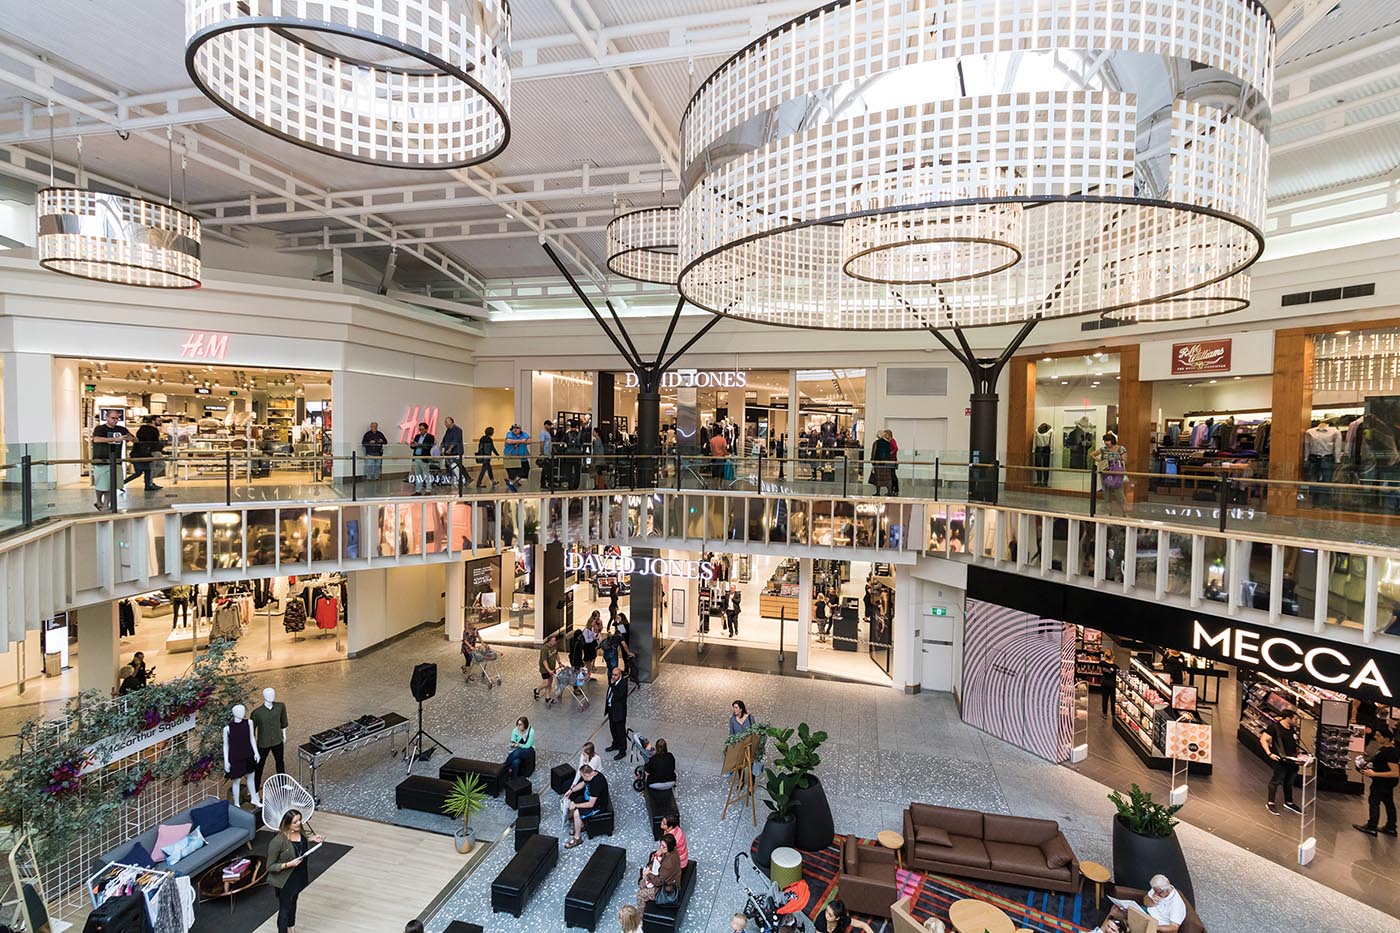 مرکز خرید در استرالیا: میدان ماکارتو